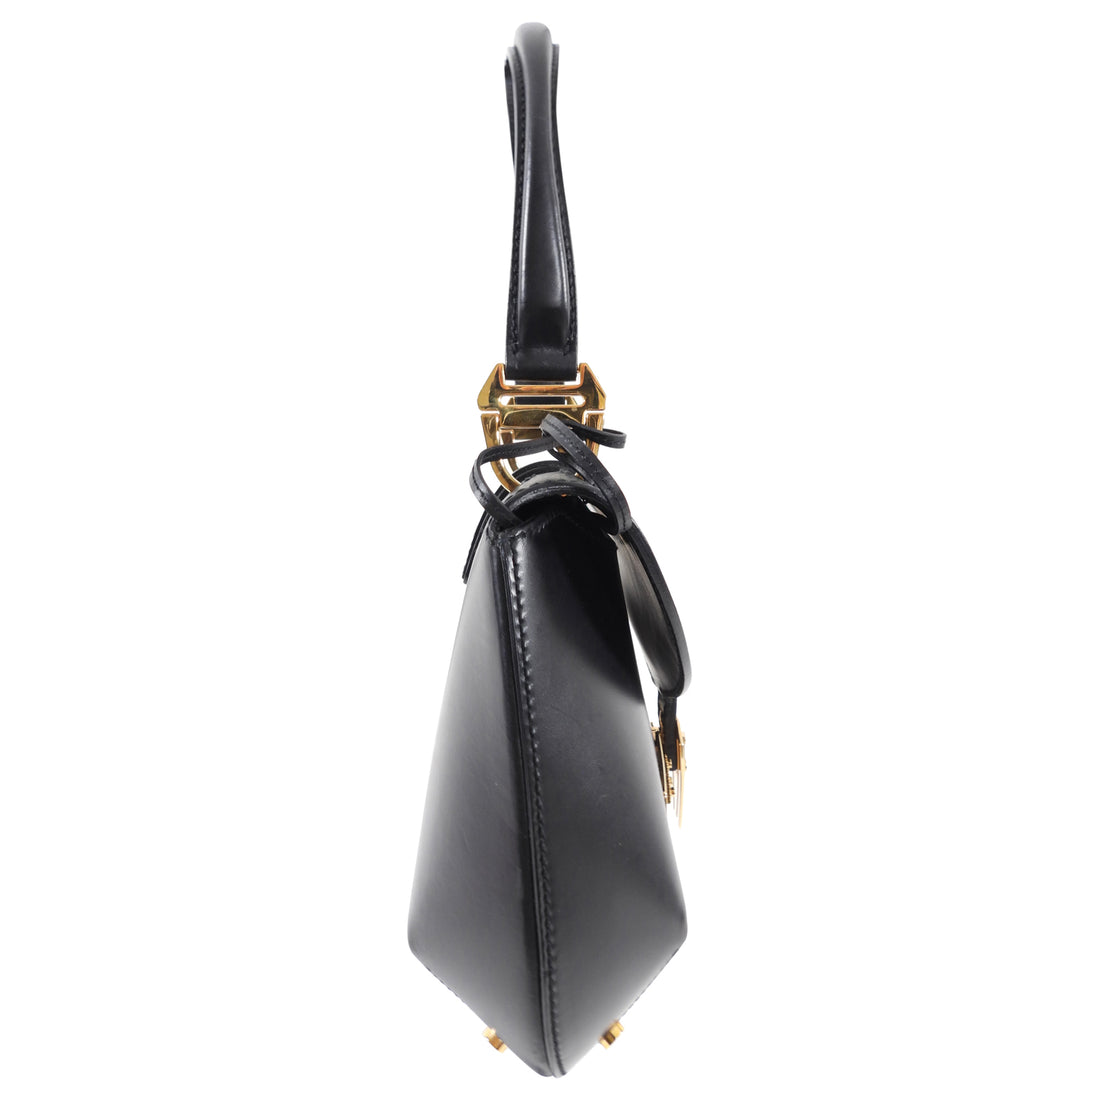 Balenciaga 2007 Black Tron Handbag with Gold Clasp